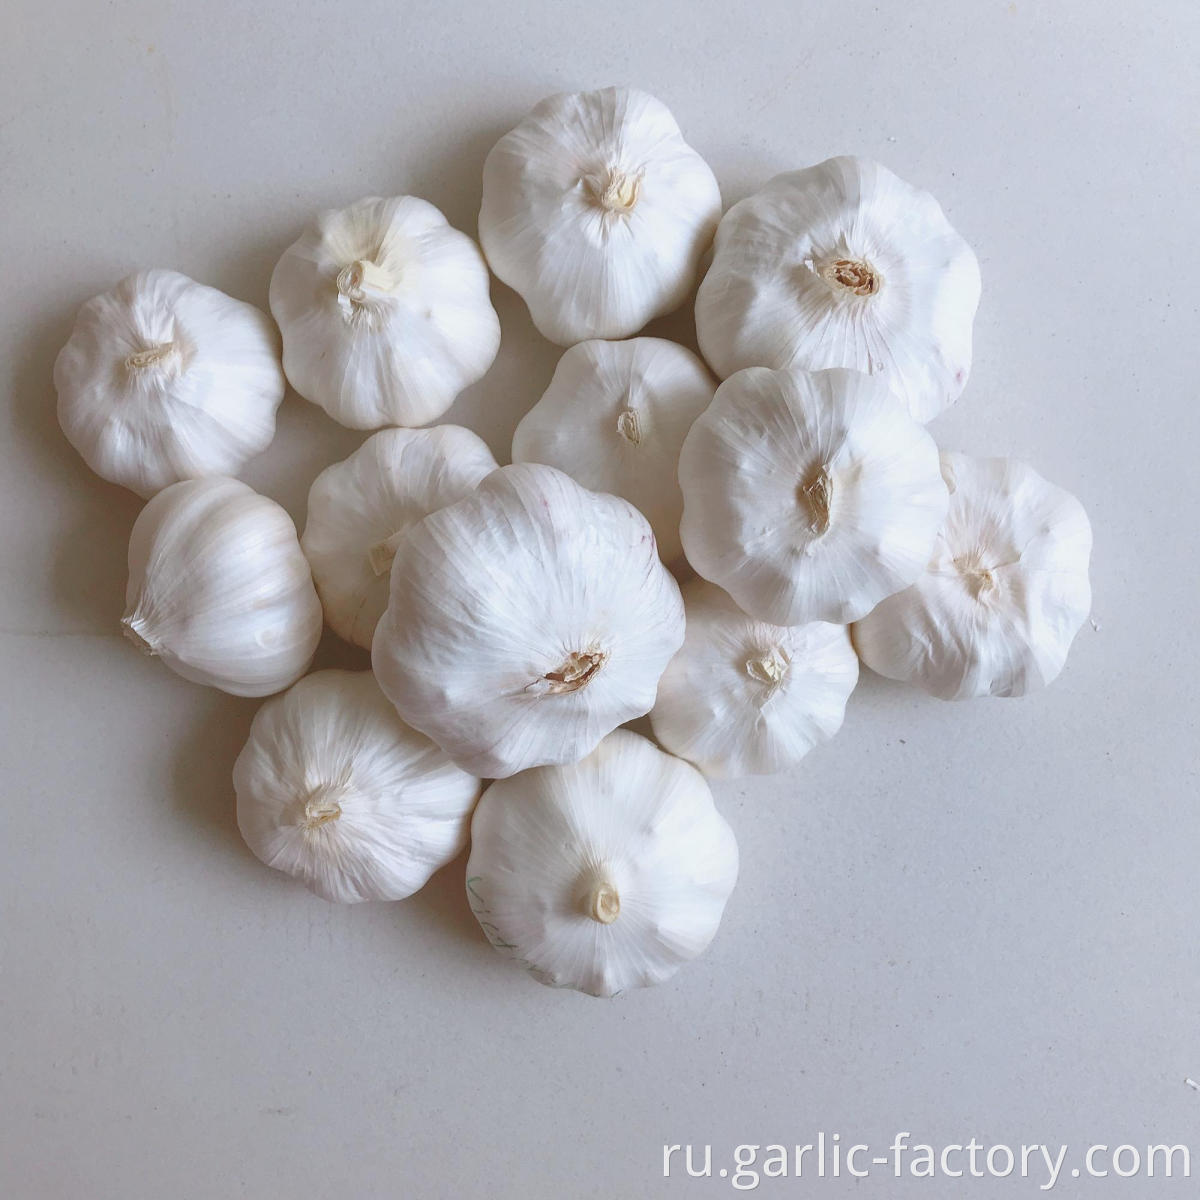 Cheap and good fresh garlic ajo 